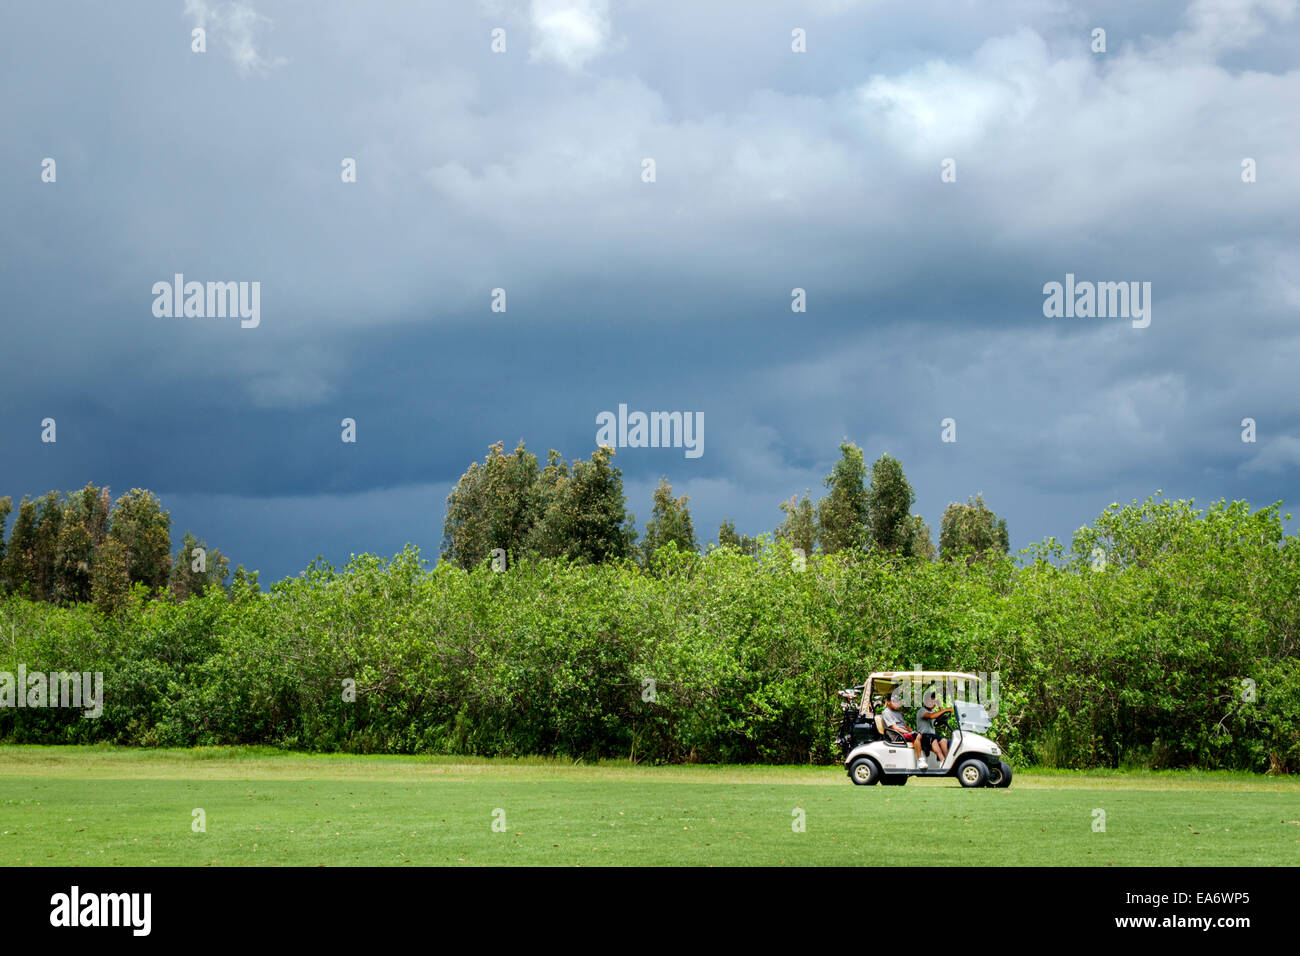 Indiantown Florida, Indianwood Golf & Country Club, approche de la tempête, menaçant, homme hommes hommes, golfeurs, voiturette électrique, FL140803096 Banque D'Images